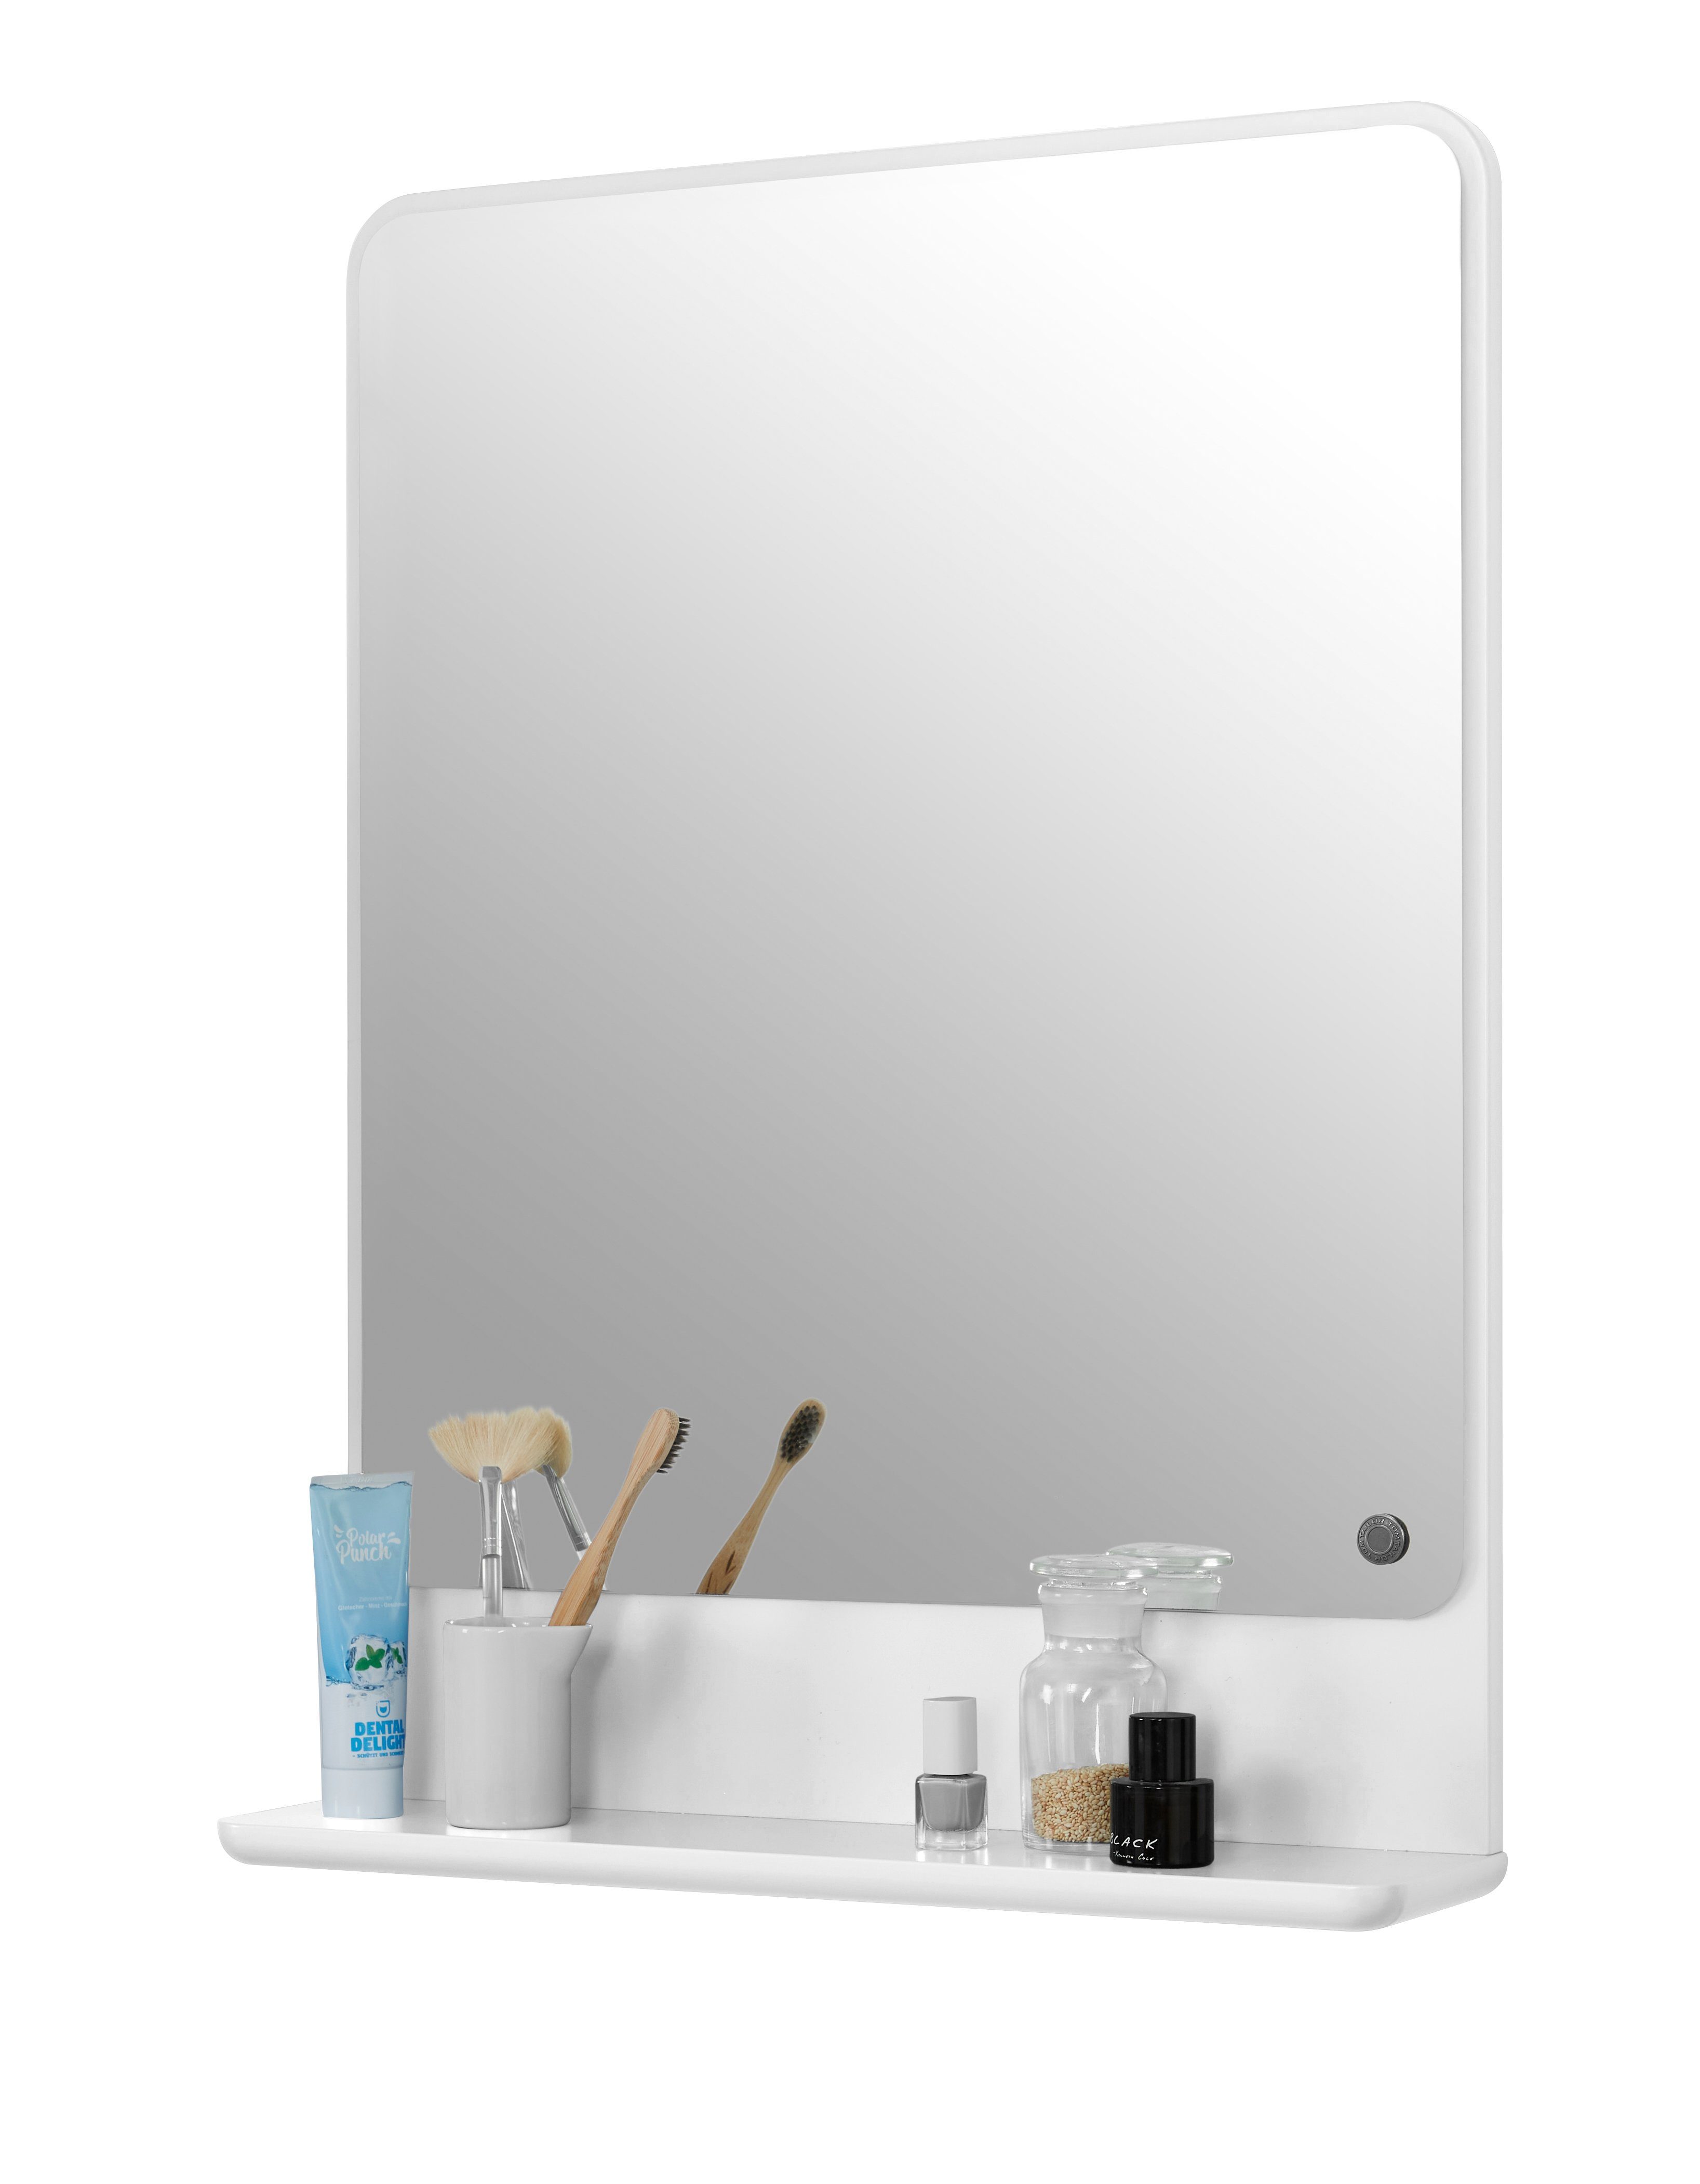 TOM TAILOR HOME Badspiegel COLOR BATH Spiegelelement - in vielen schönen Farben - 70 x 52 x 13 cm, hochwertig lackiertes MDF, gerundete Kanten white001